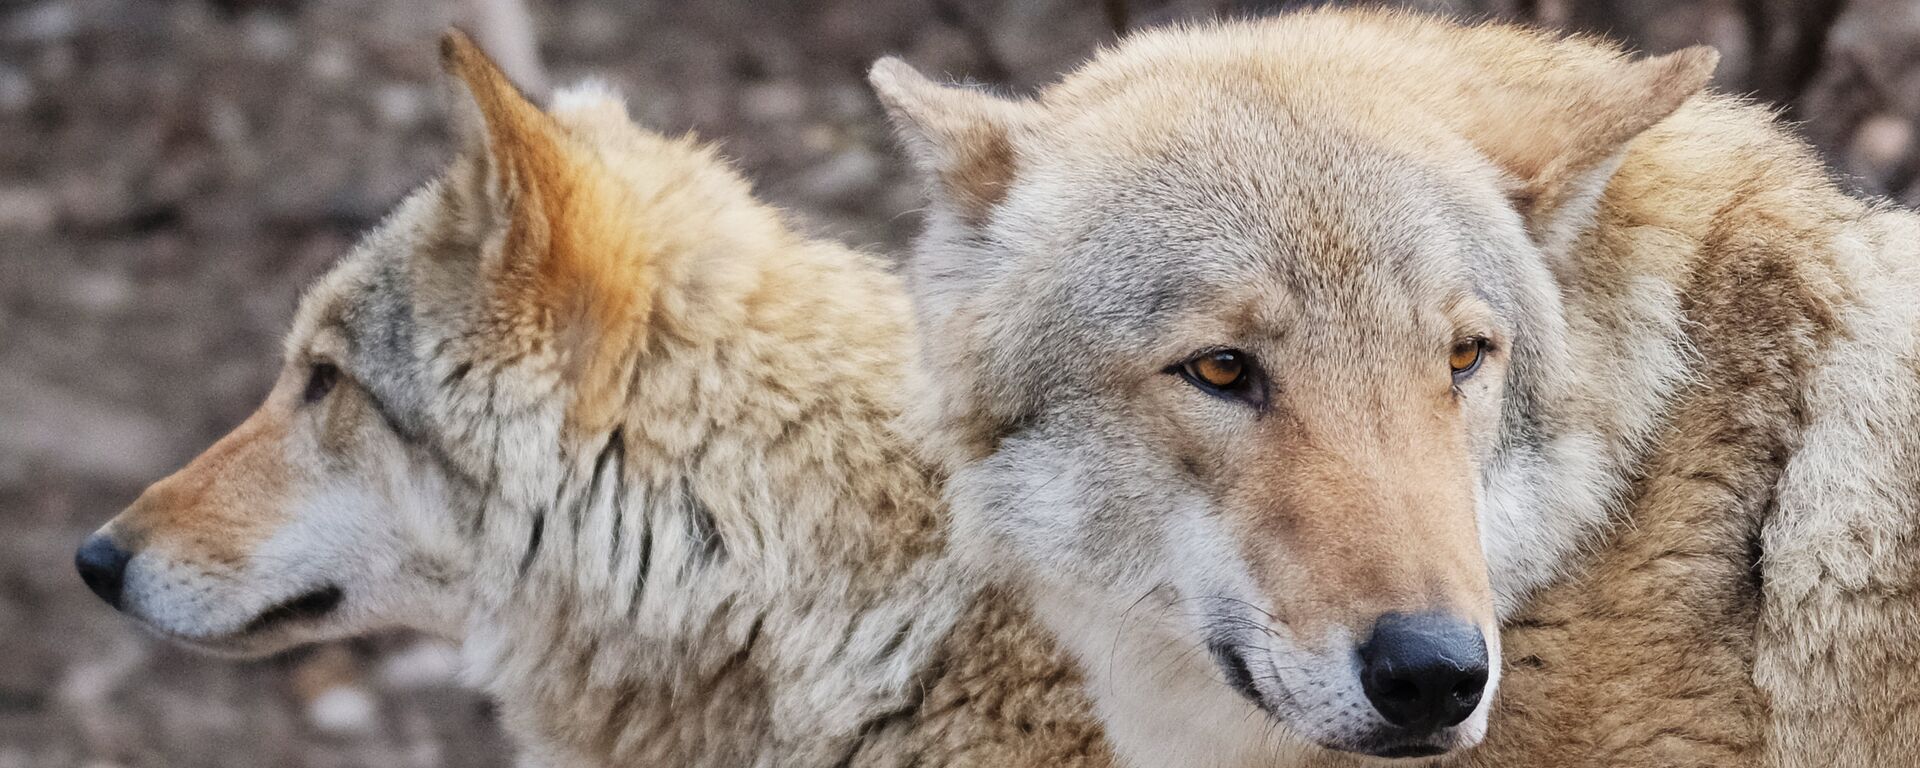 Европейские волки (canis lupus) в Московском зоопарке - Sputnik Латвия, 1920, 08.12.2017